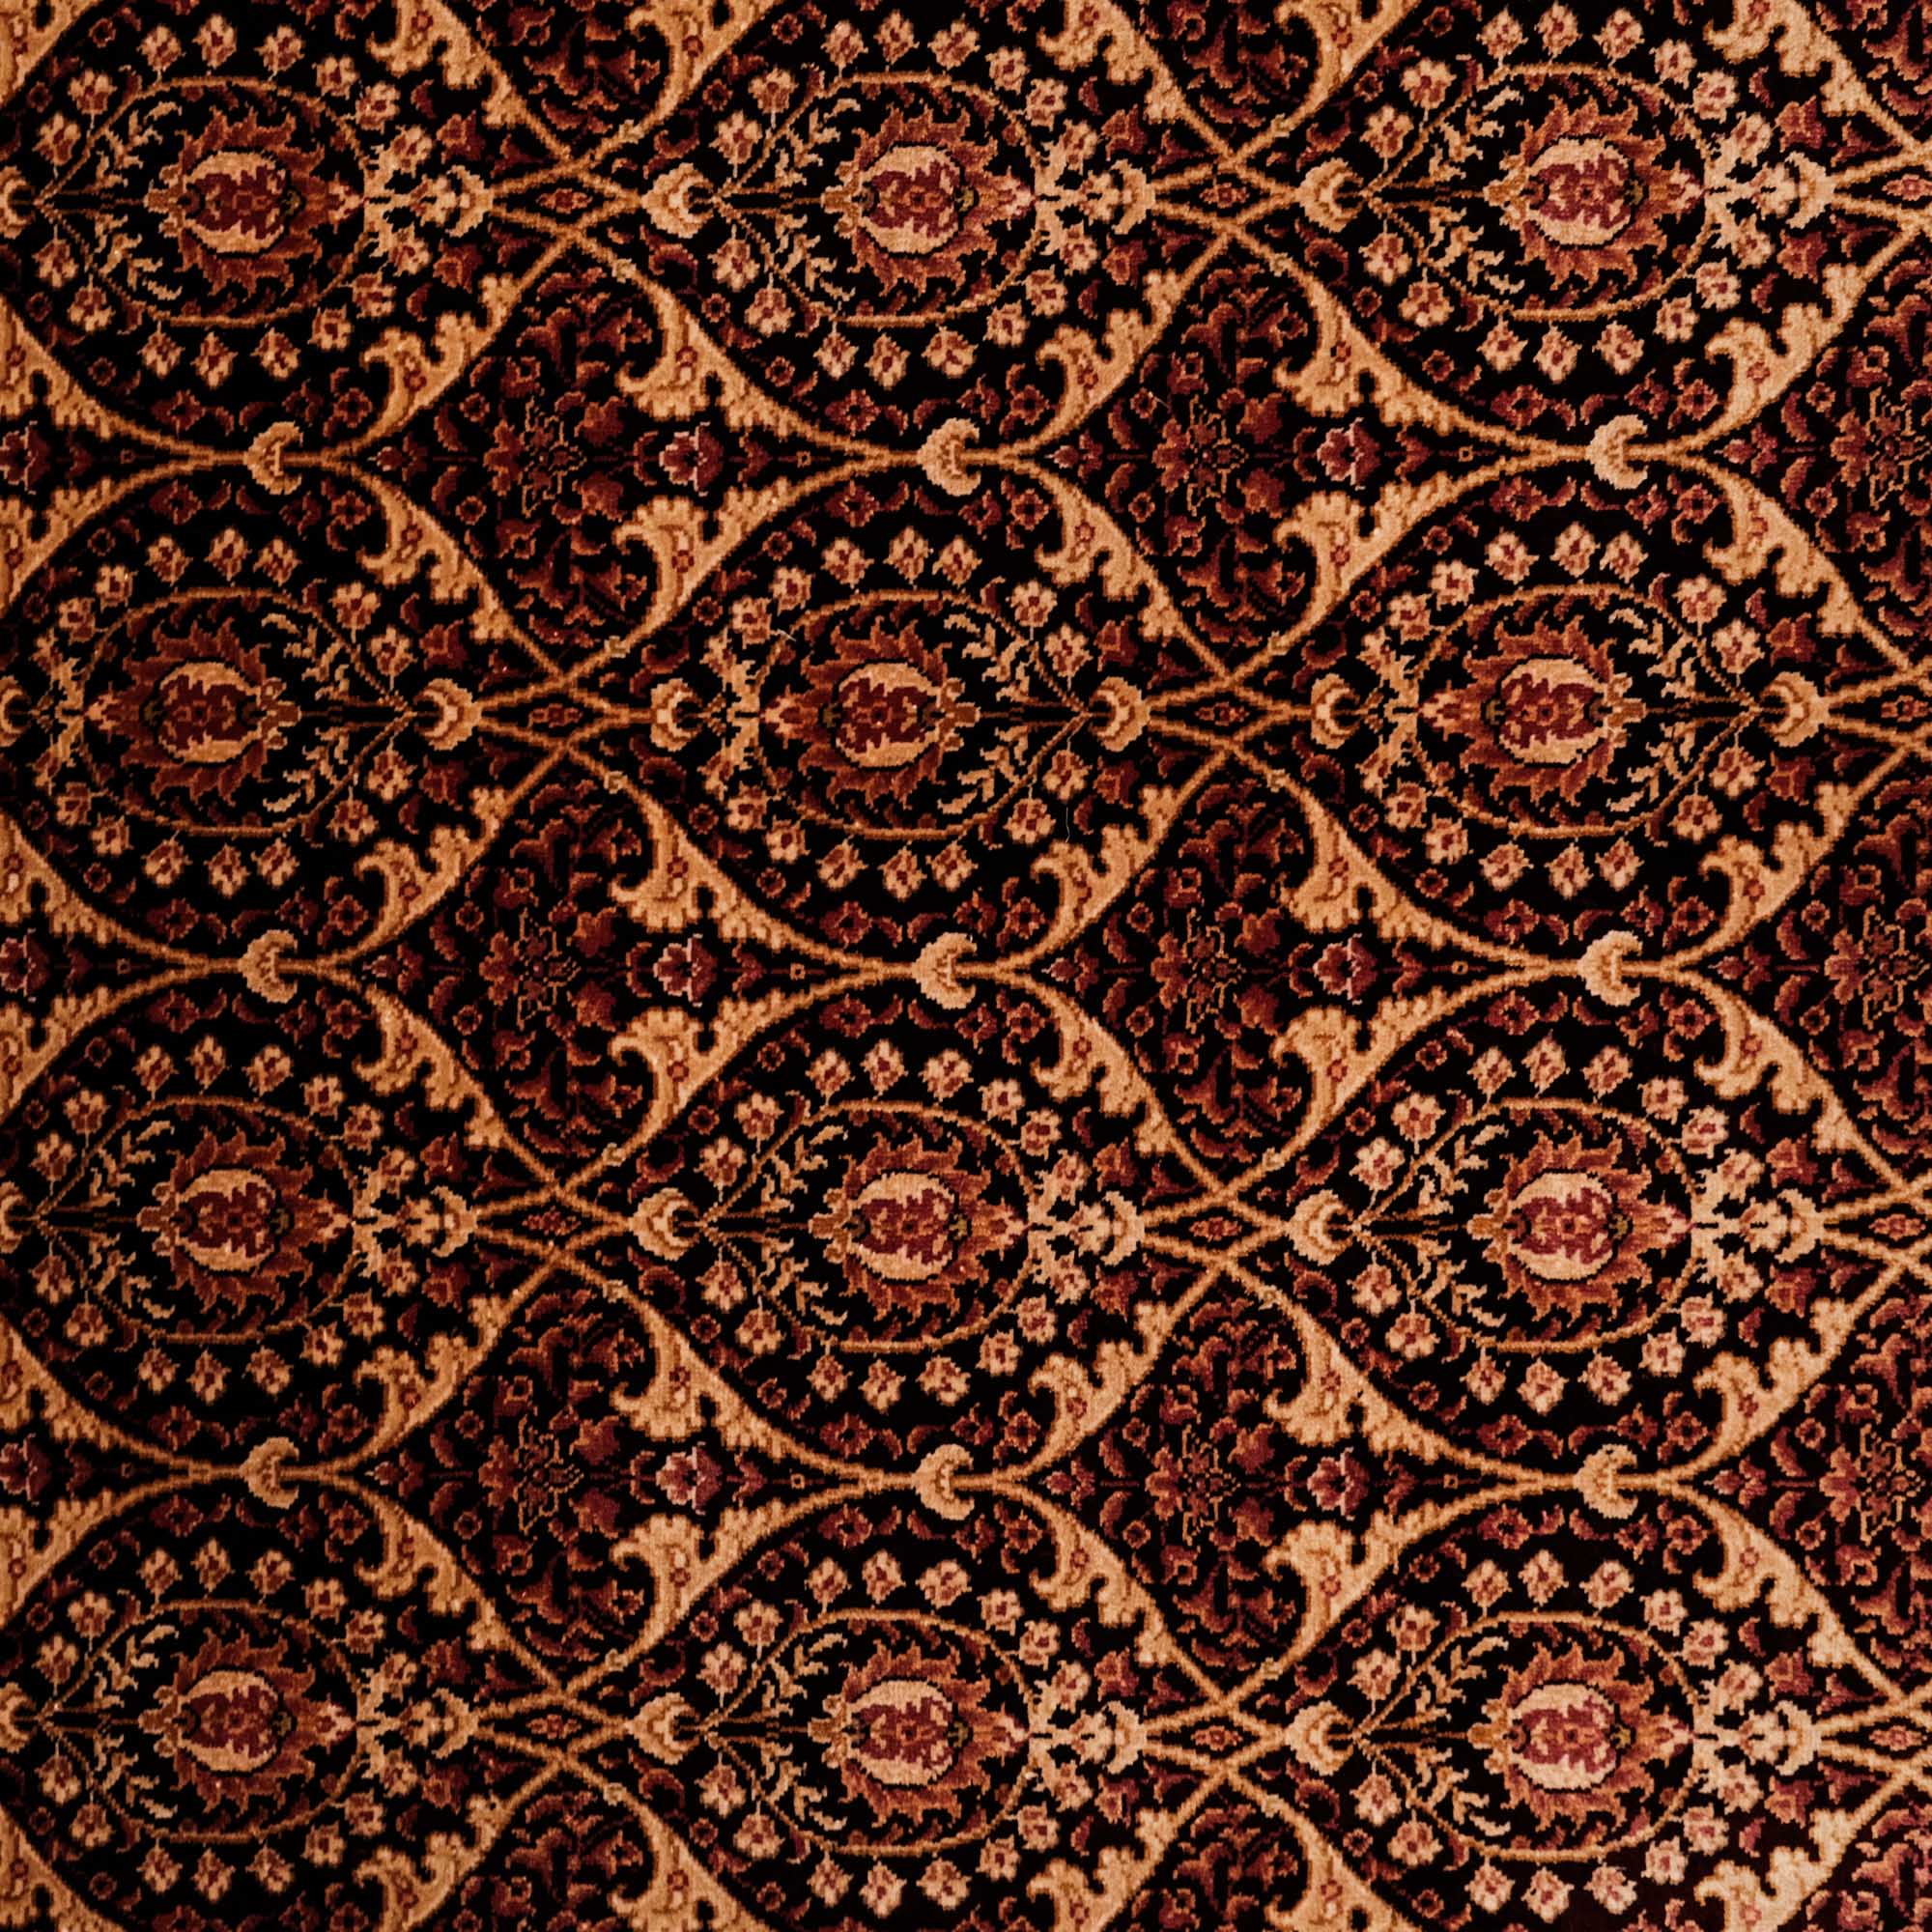 Frame Design Hand Woven Carpet